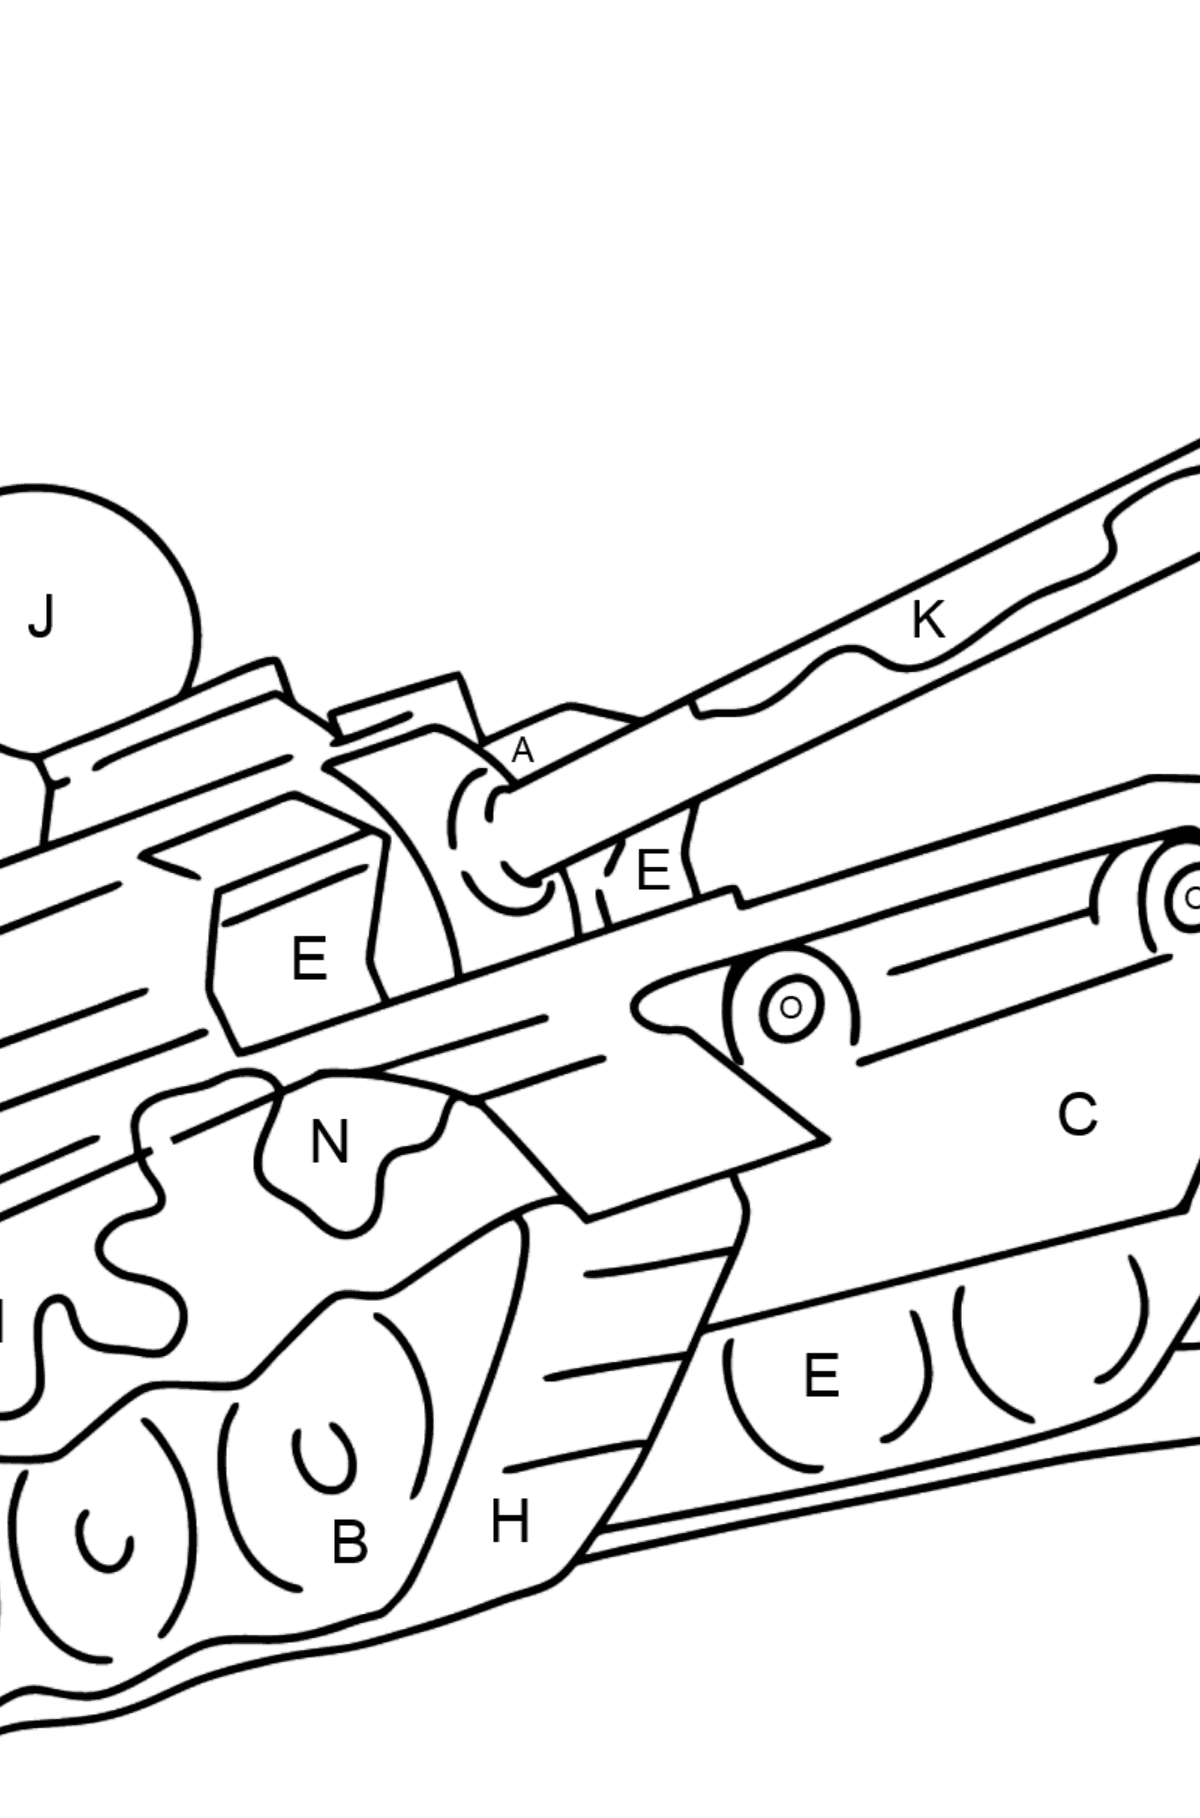 Desenho para colorir de tanques militares - Colorir por Letras para Crianças